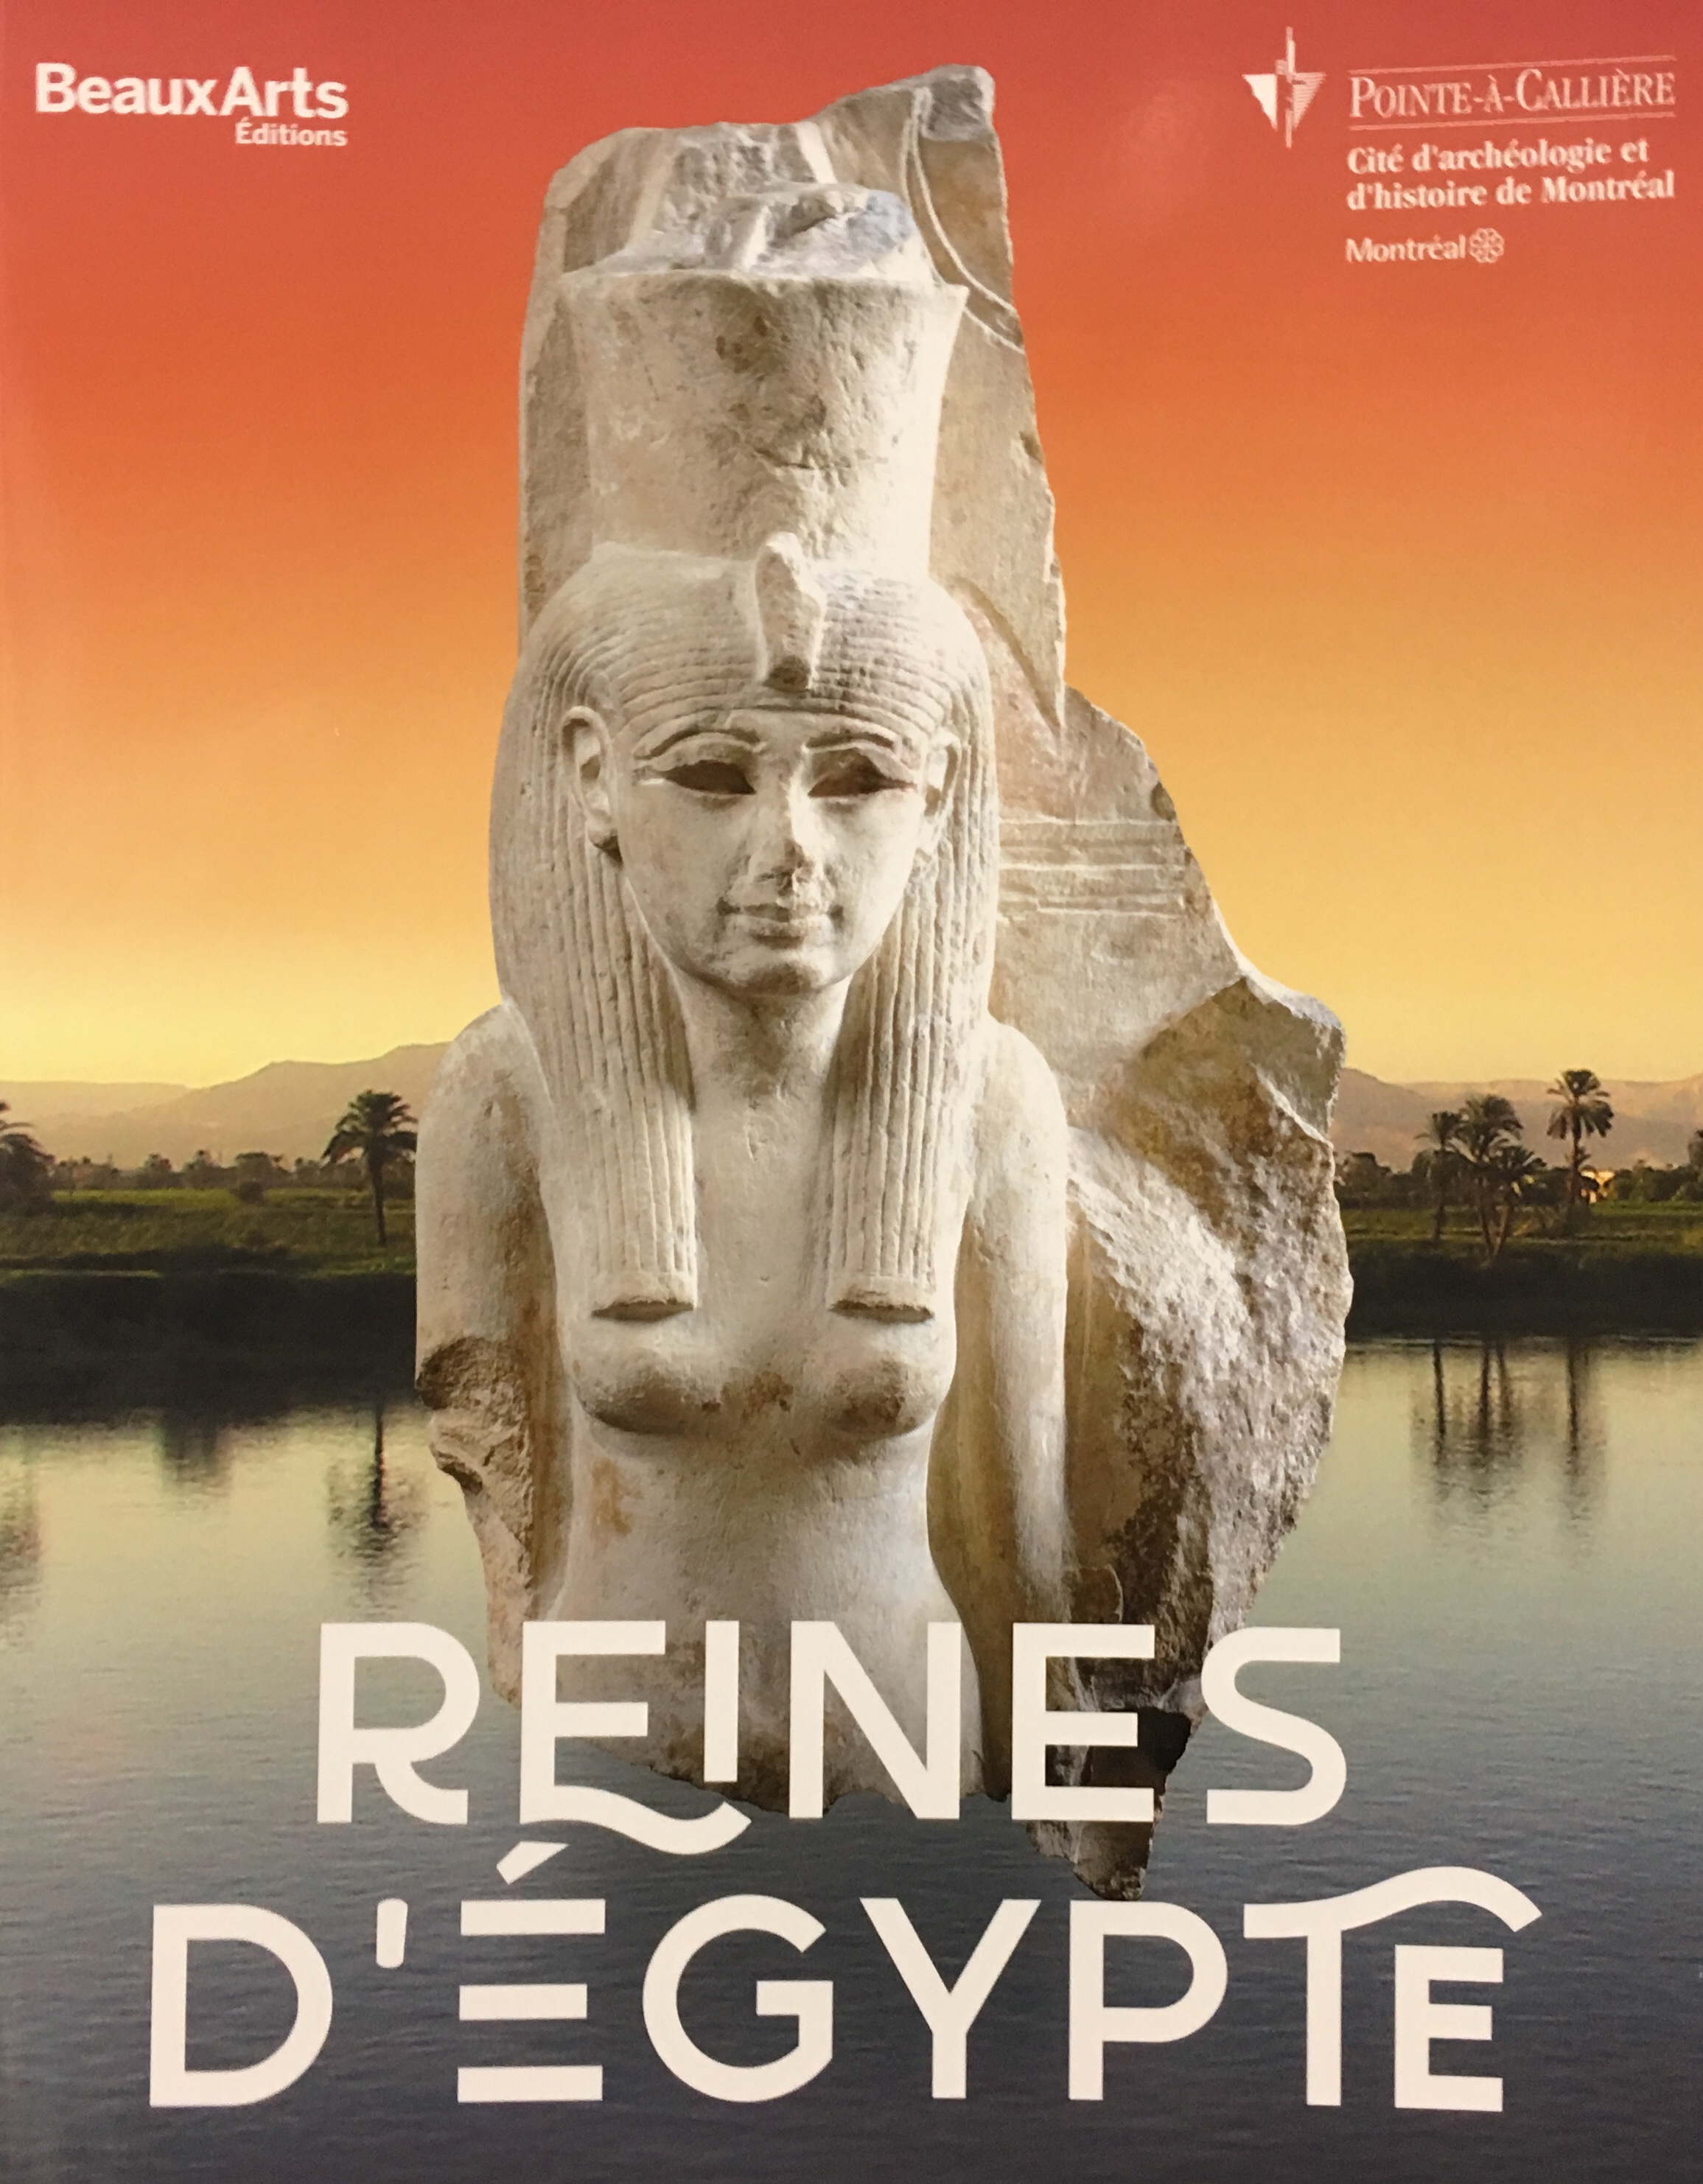 La couverture des Reines d'Égypte à Pointe-à-Callière.